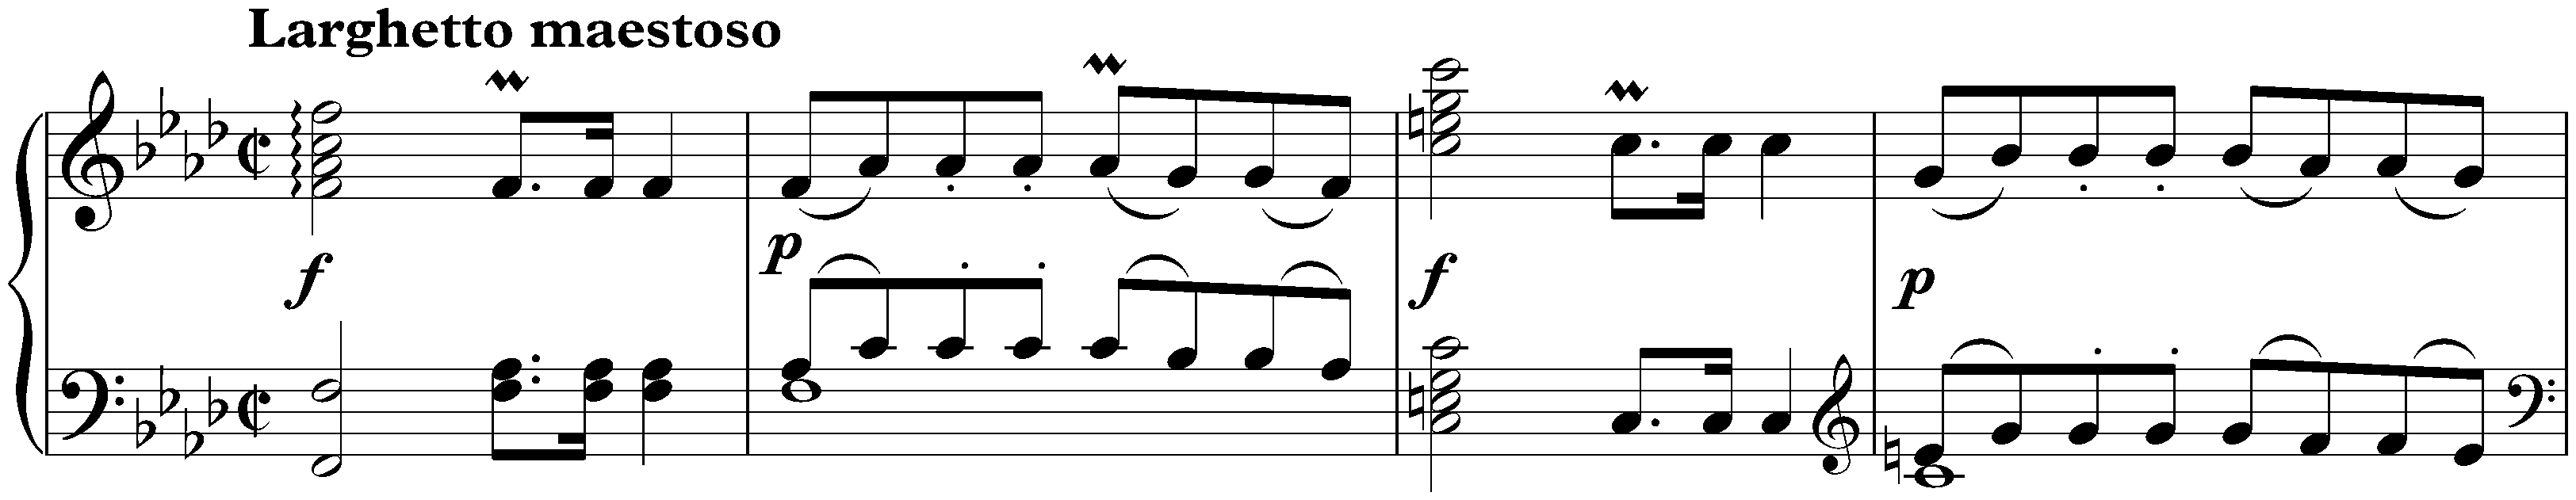 Sonata in F minor, WoO 47 no. 2; 1. Larghetto maestoso – Allegro assai